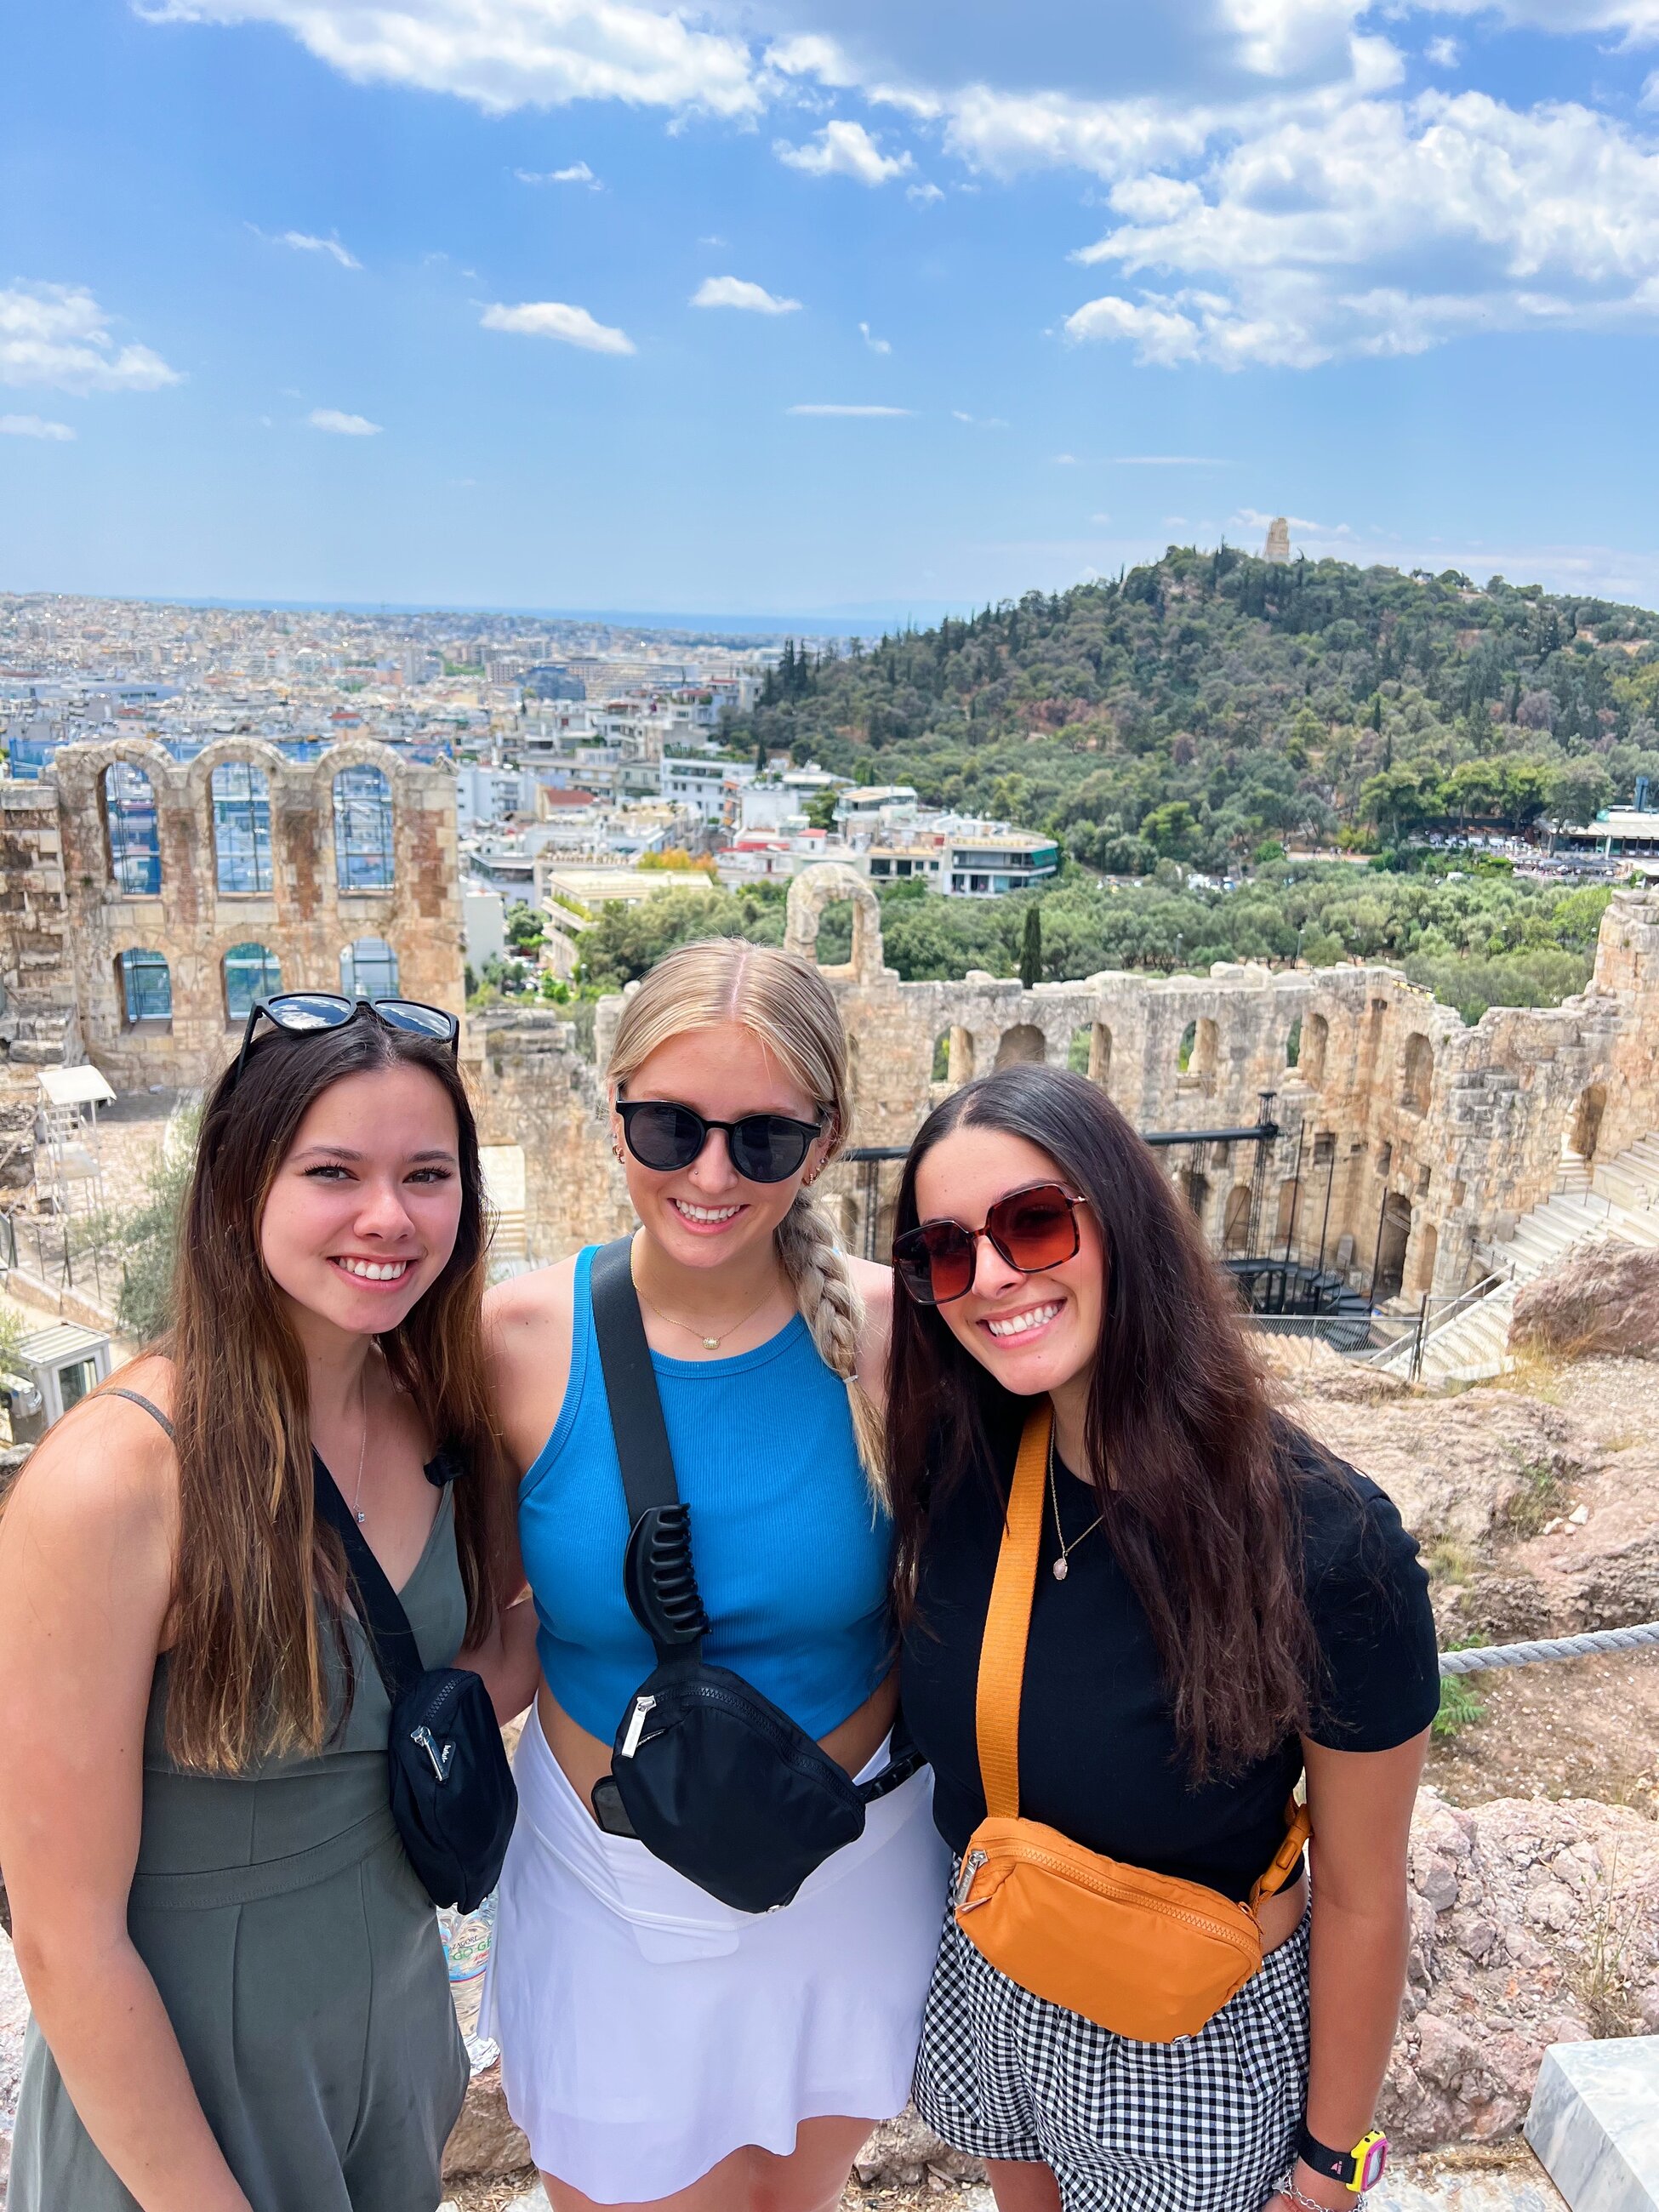 Exploring the Acropolis